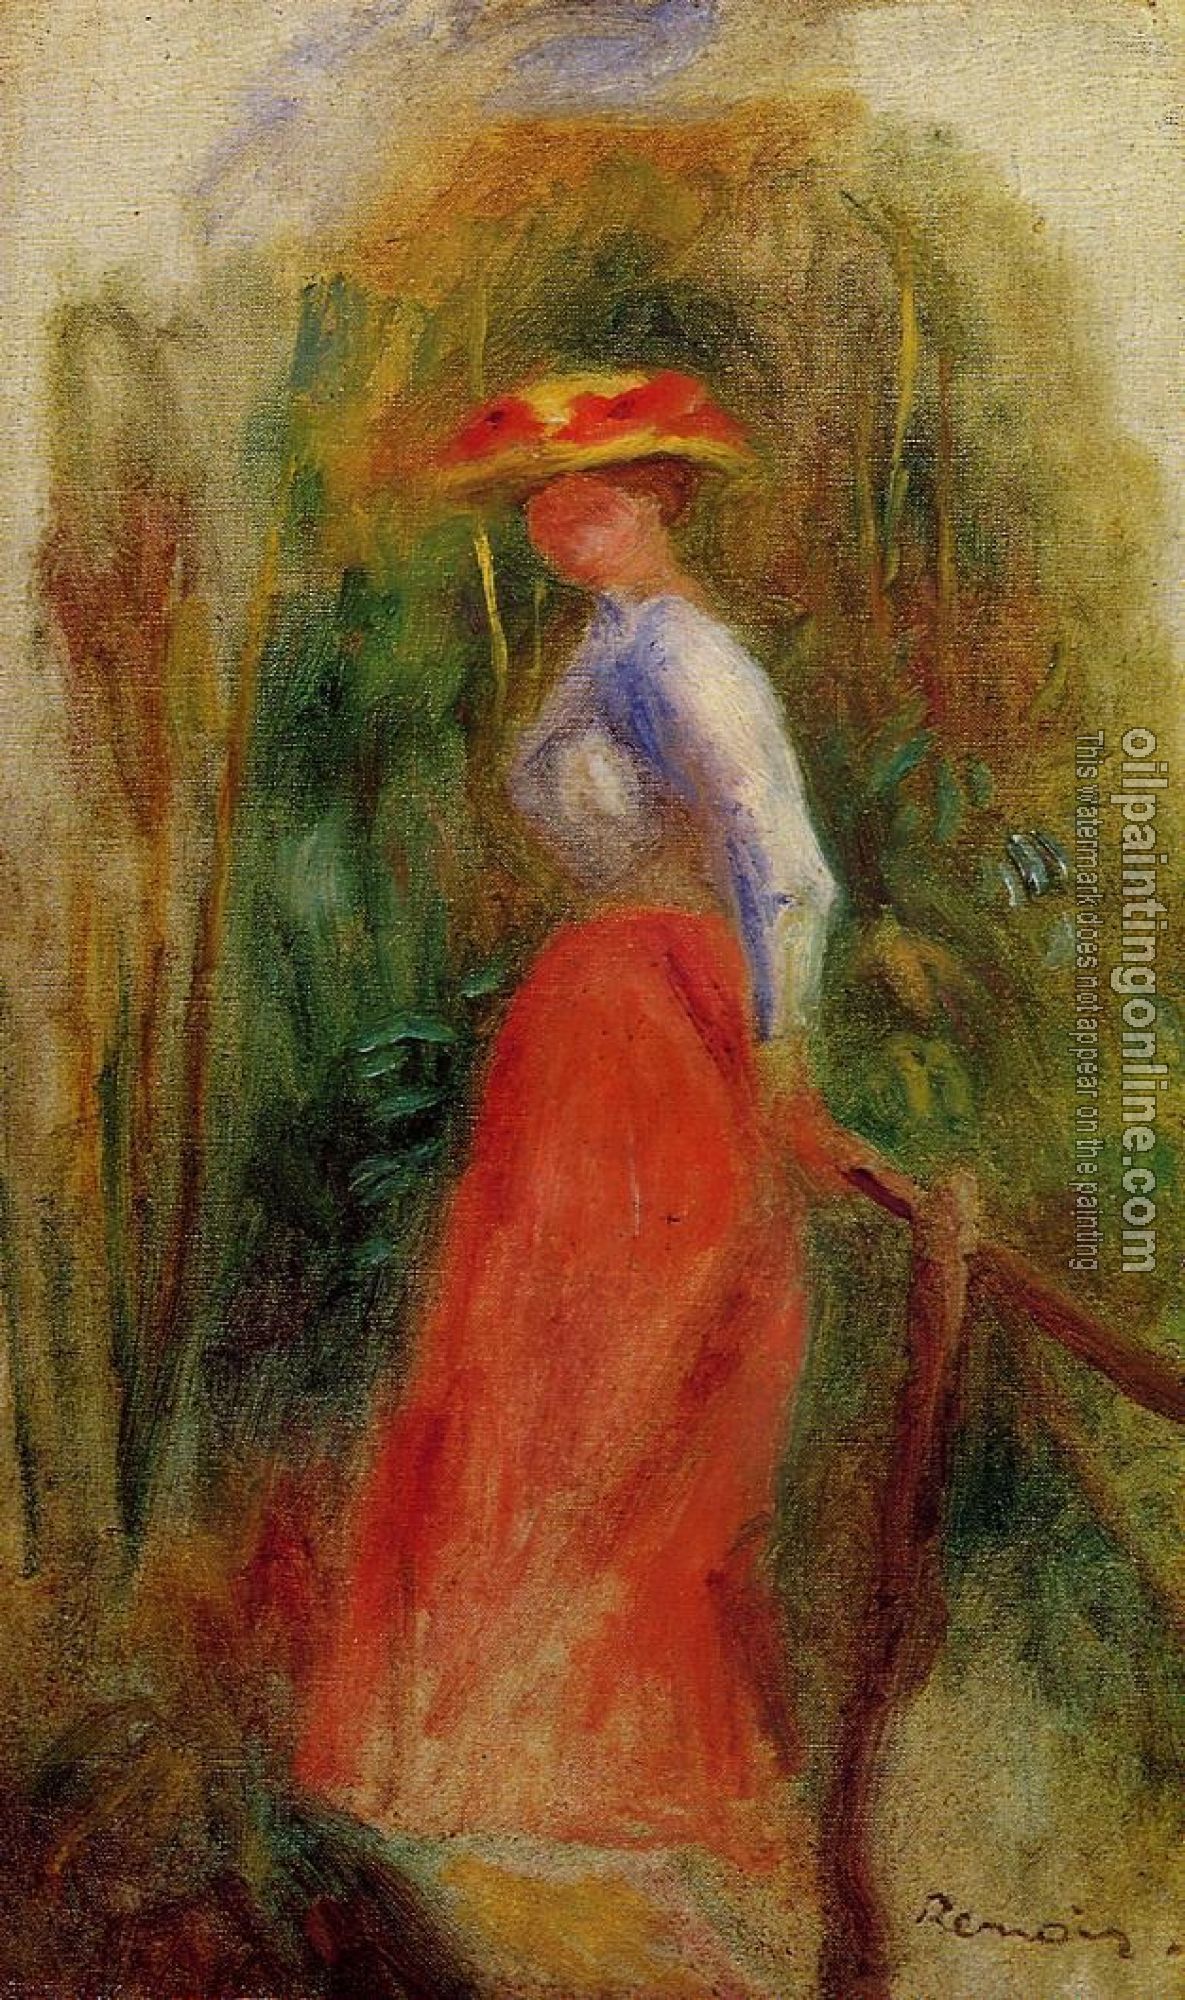 Renoir, Pierre Auguste - Woman in a Landscape